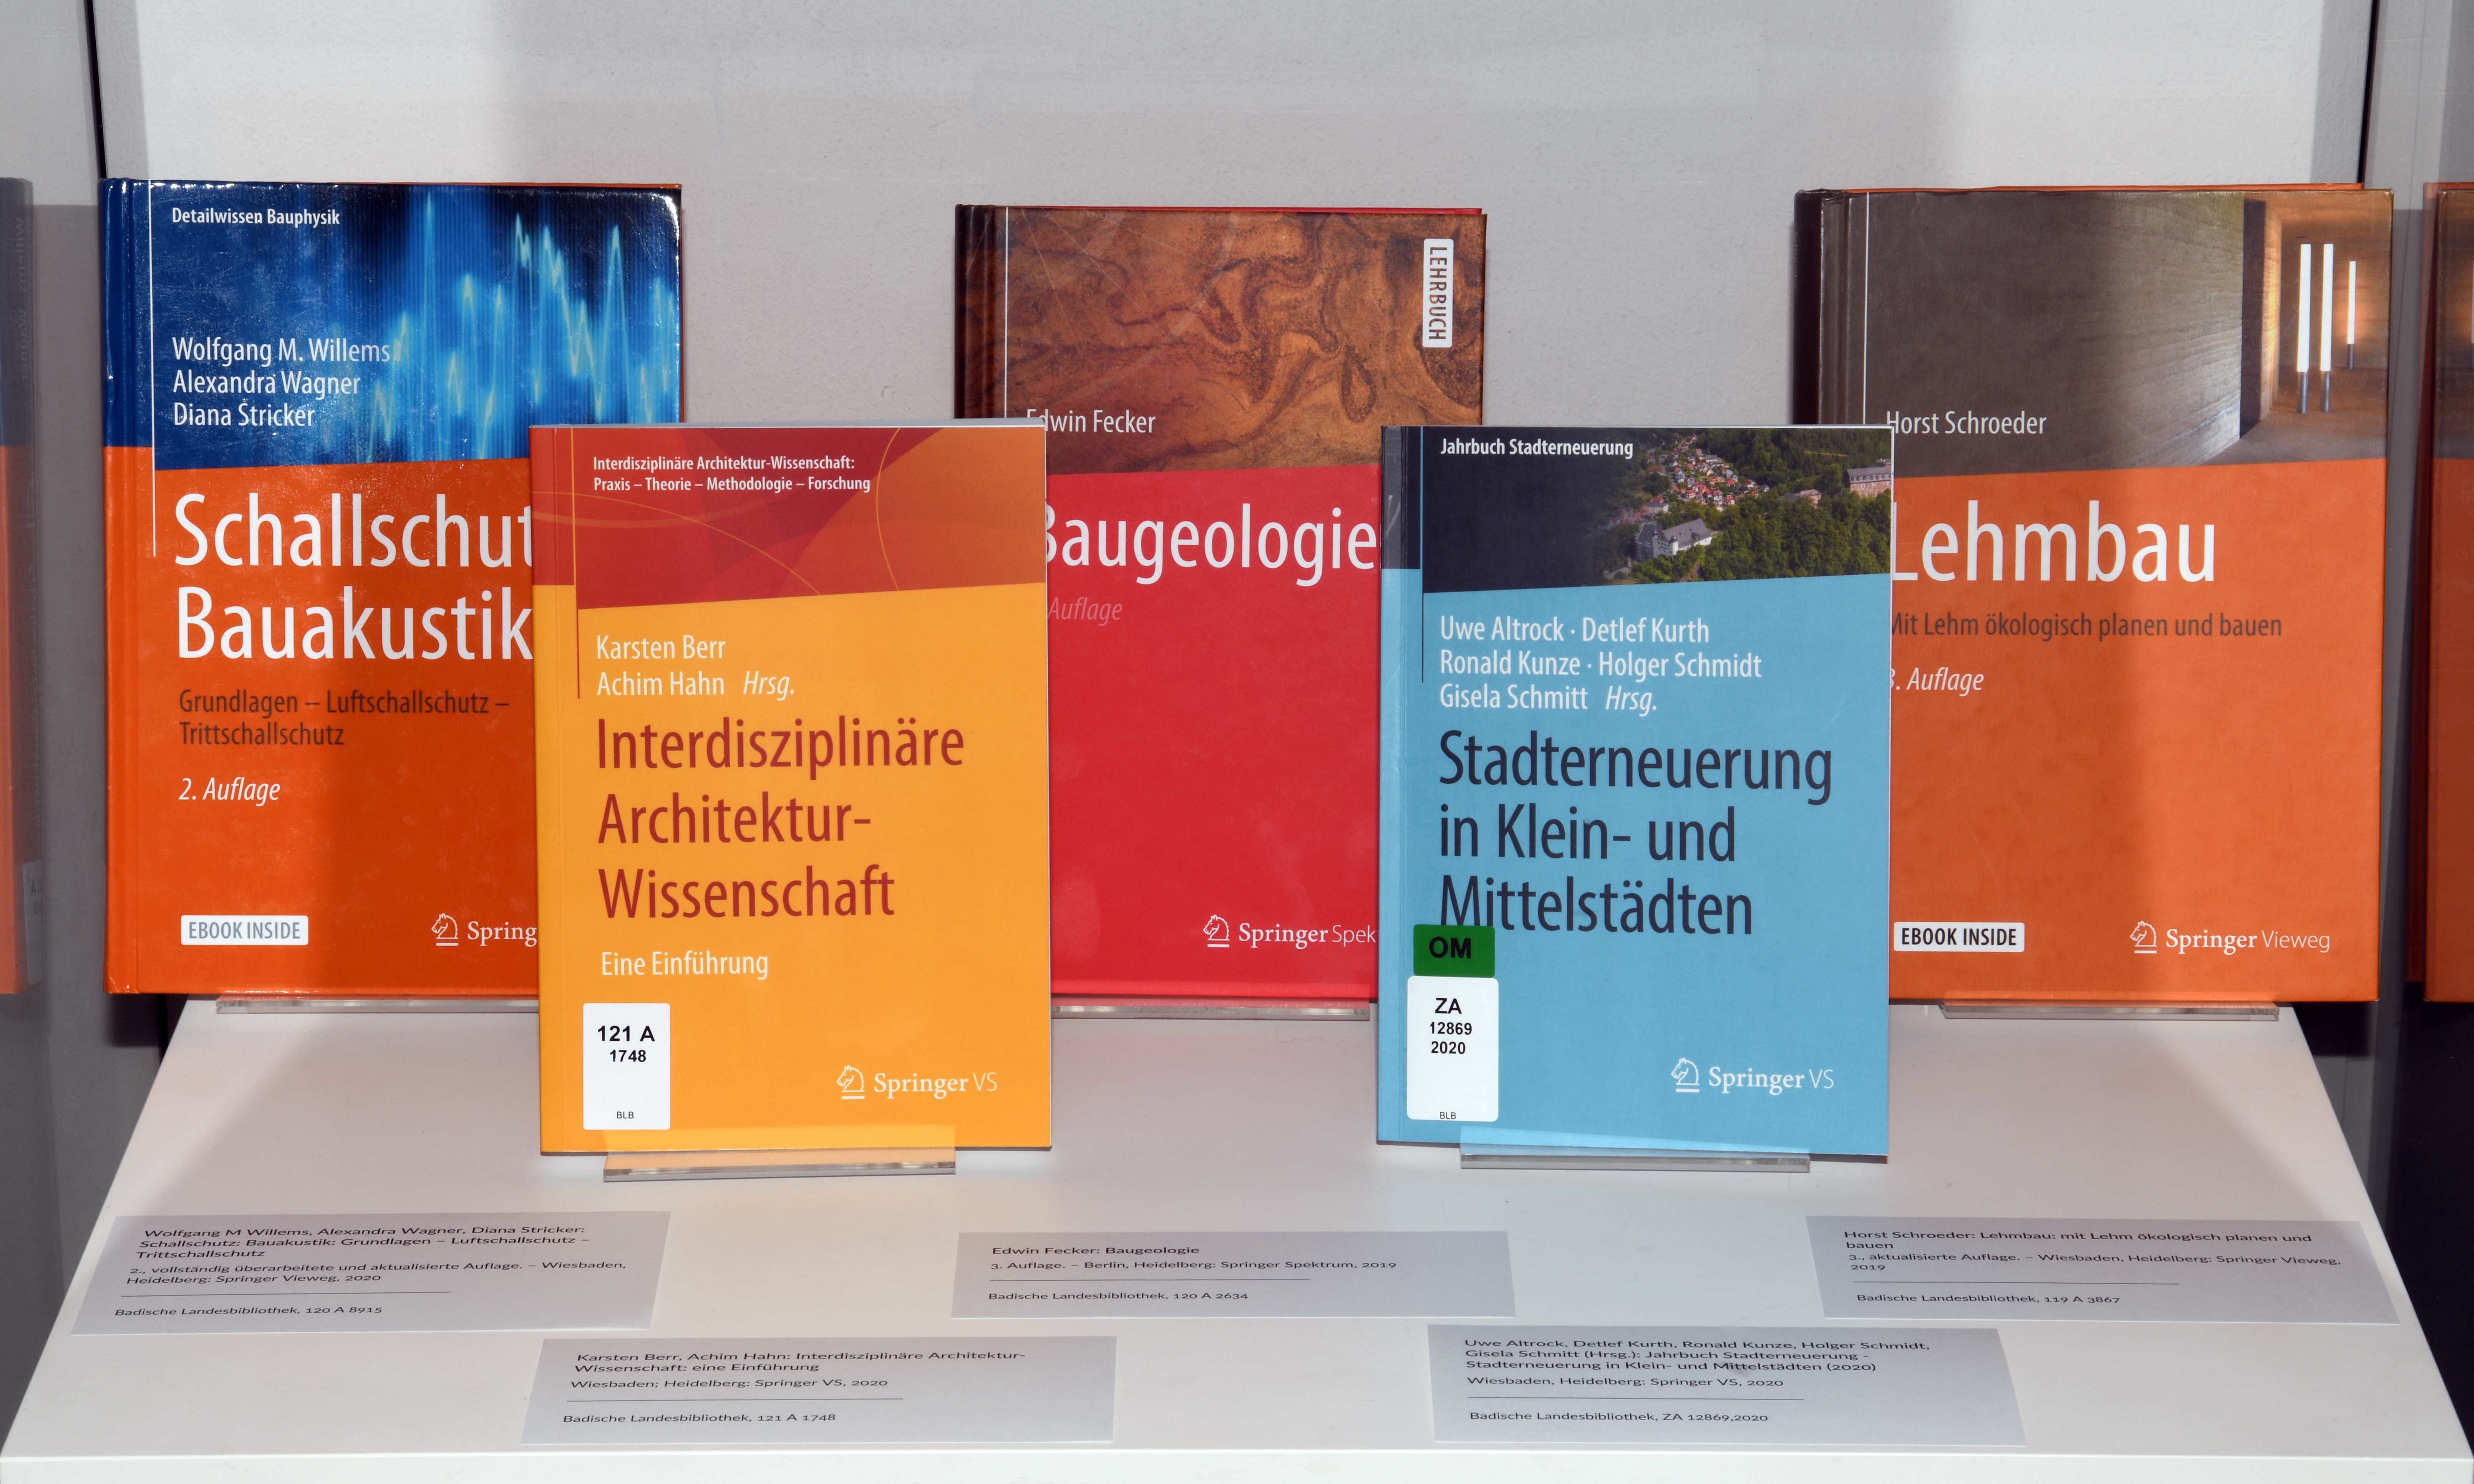 Bücher zum Thema "Bauen" aus dem Springer-Verlag